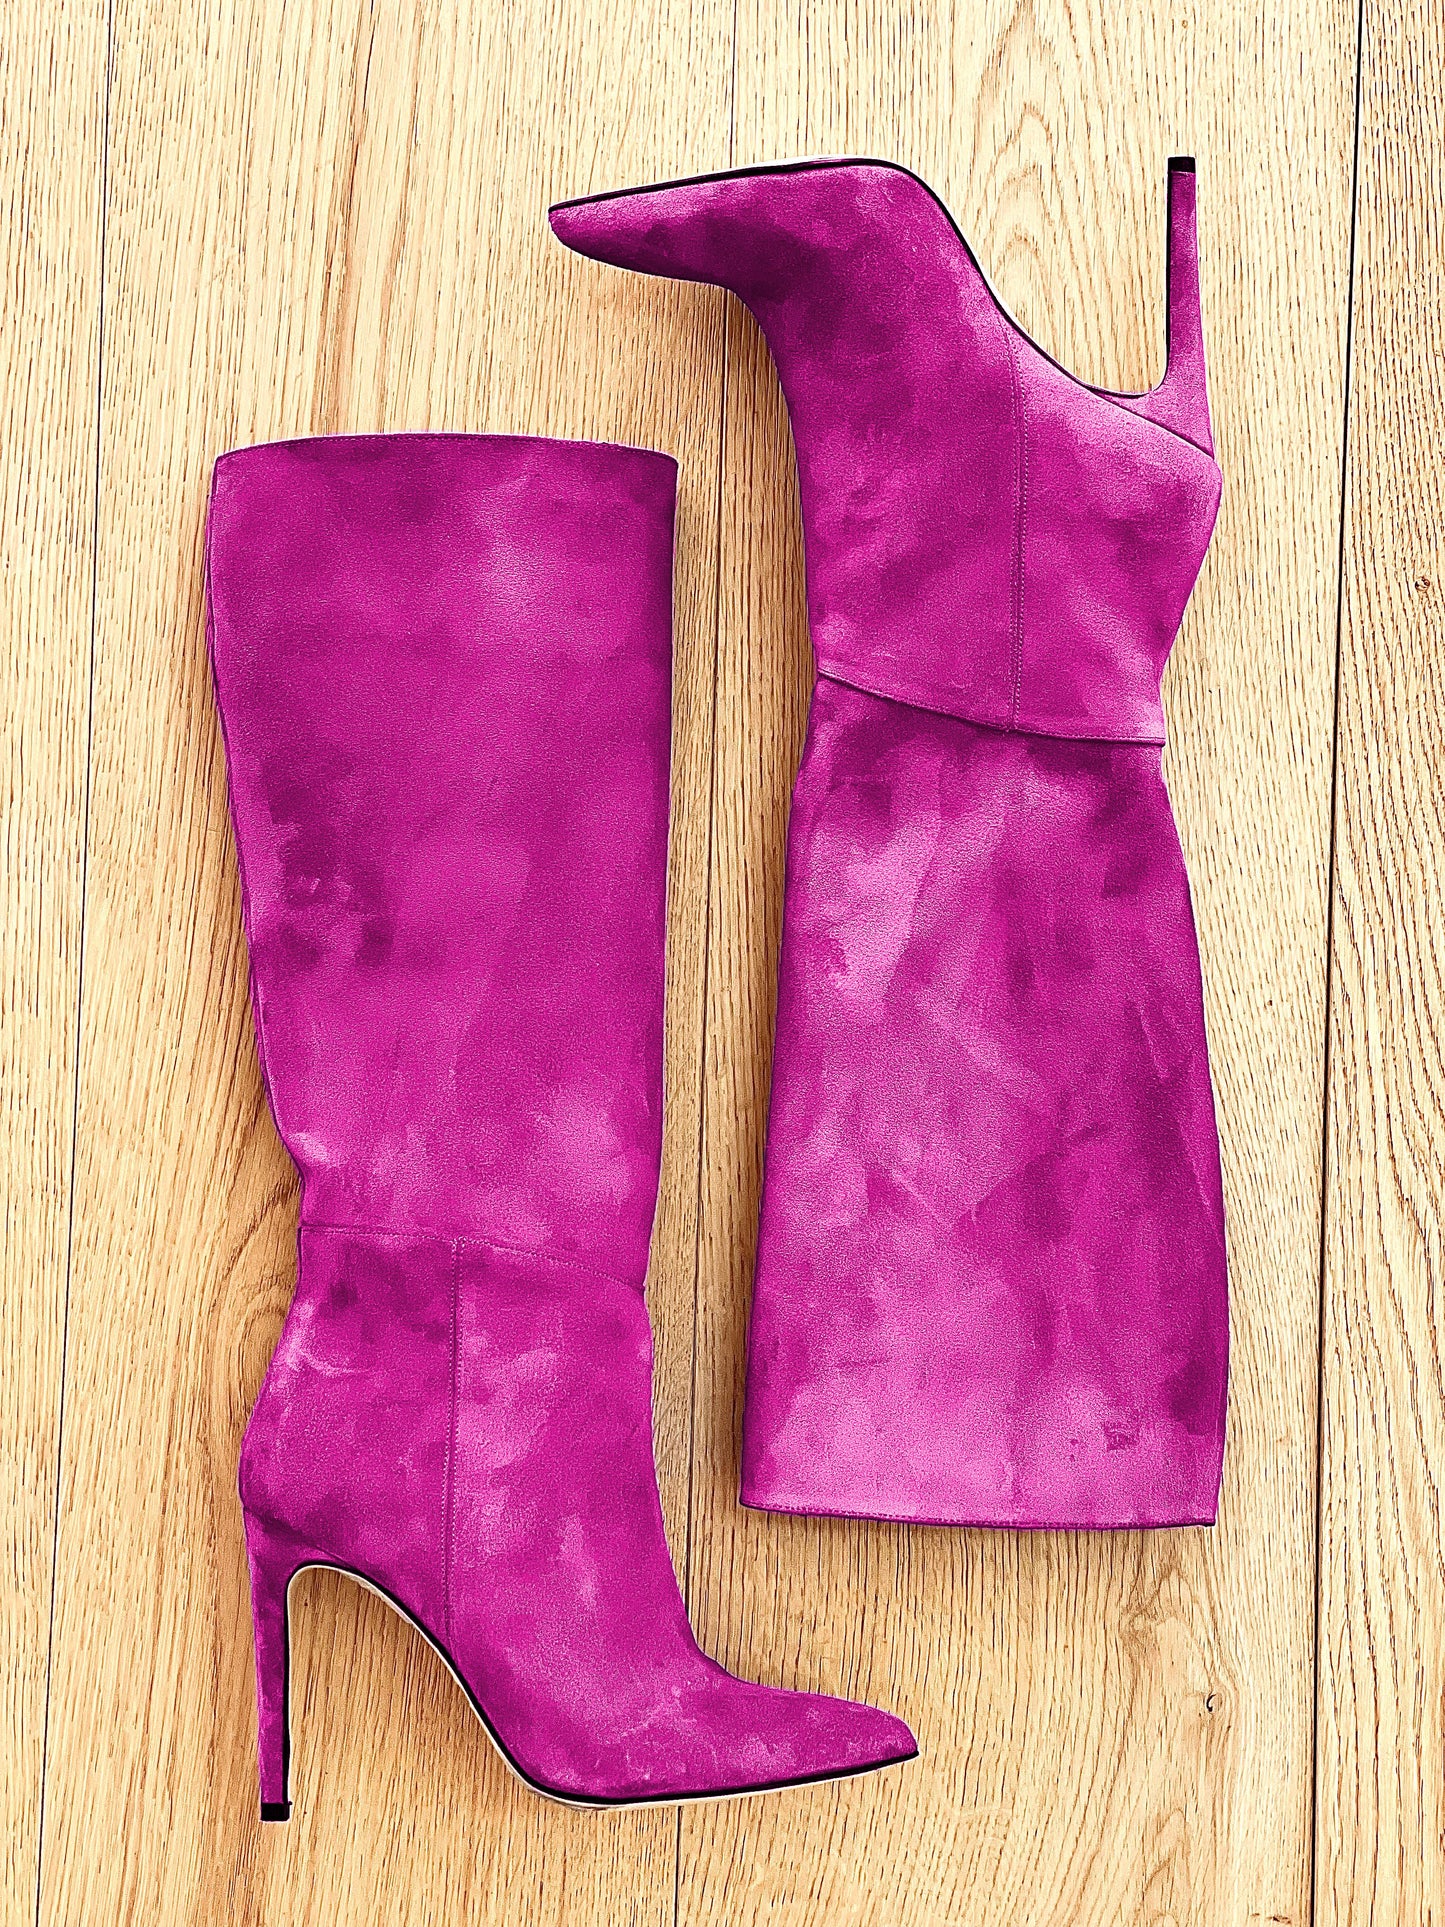 紫红色玛雅麂皮绒